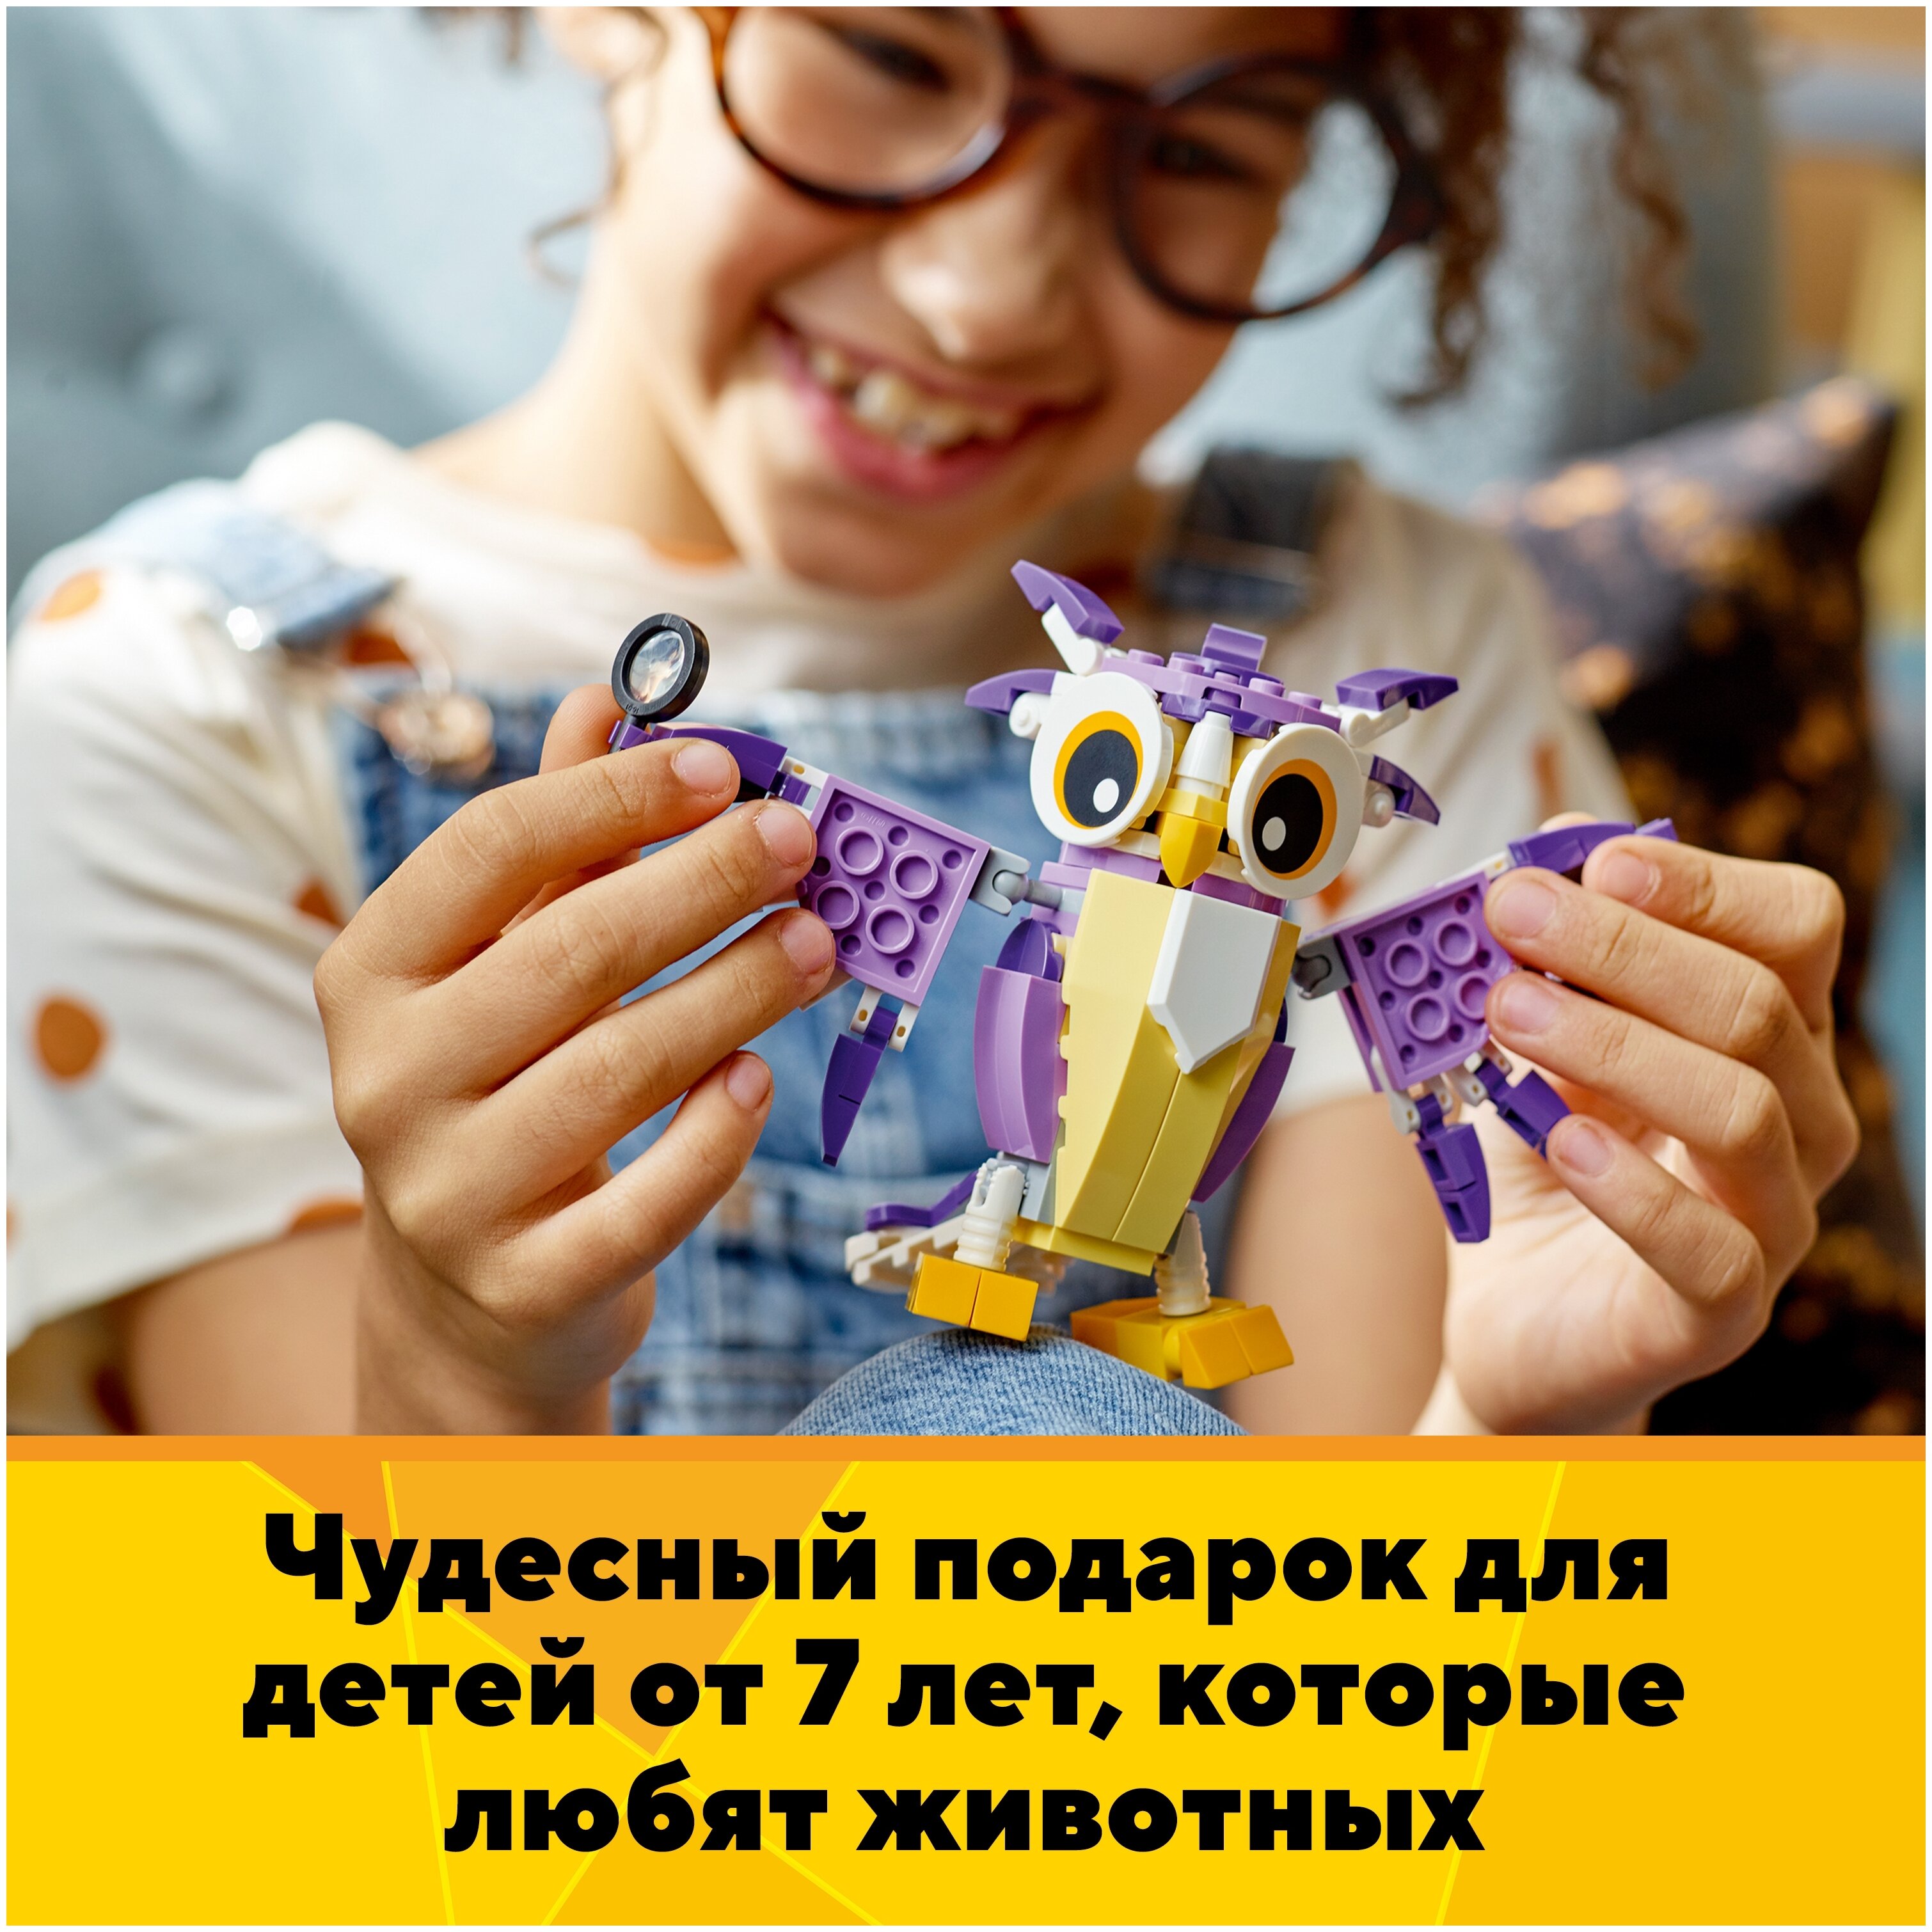 Конструктор LEGO Удивительные лесные обитатели Creator 31125 Казахстан